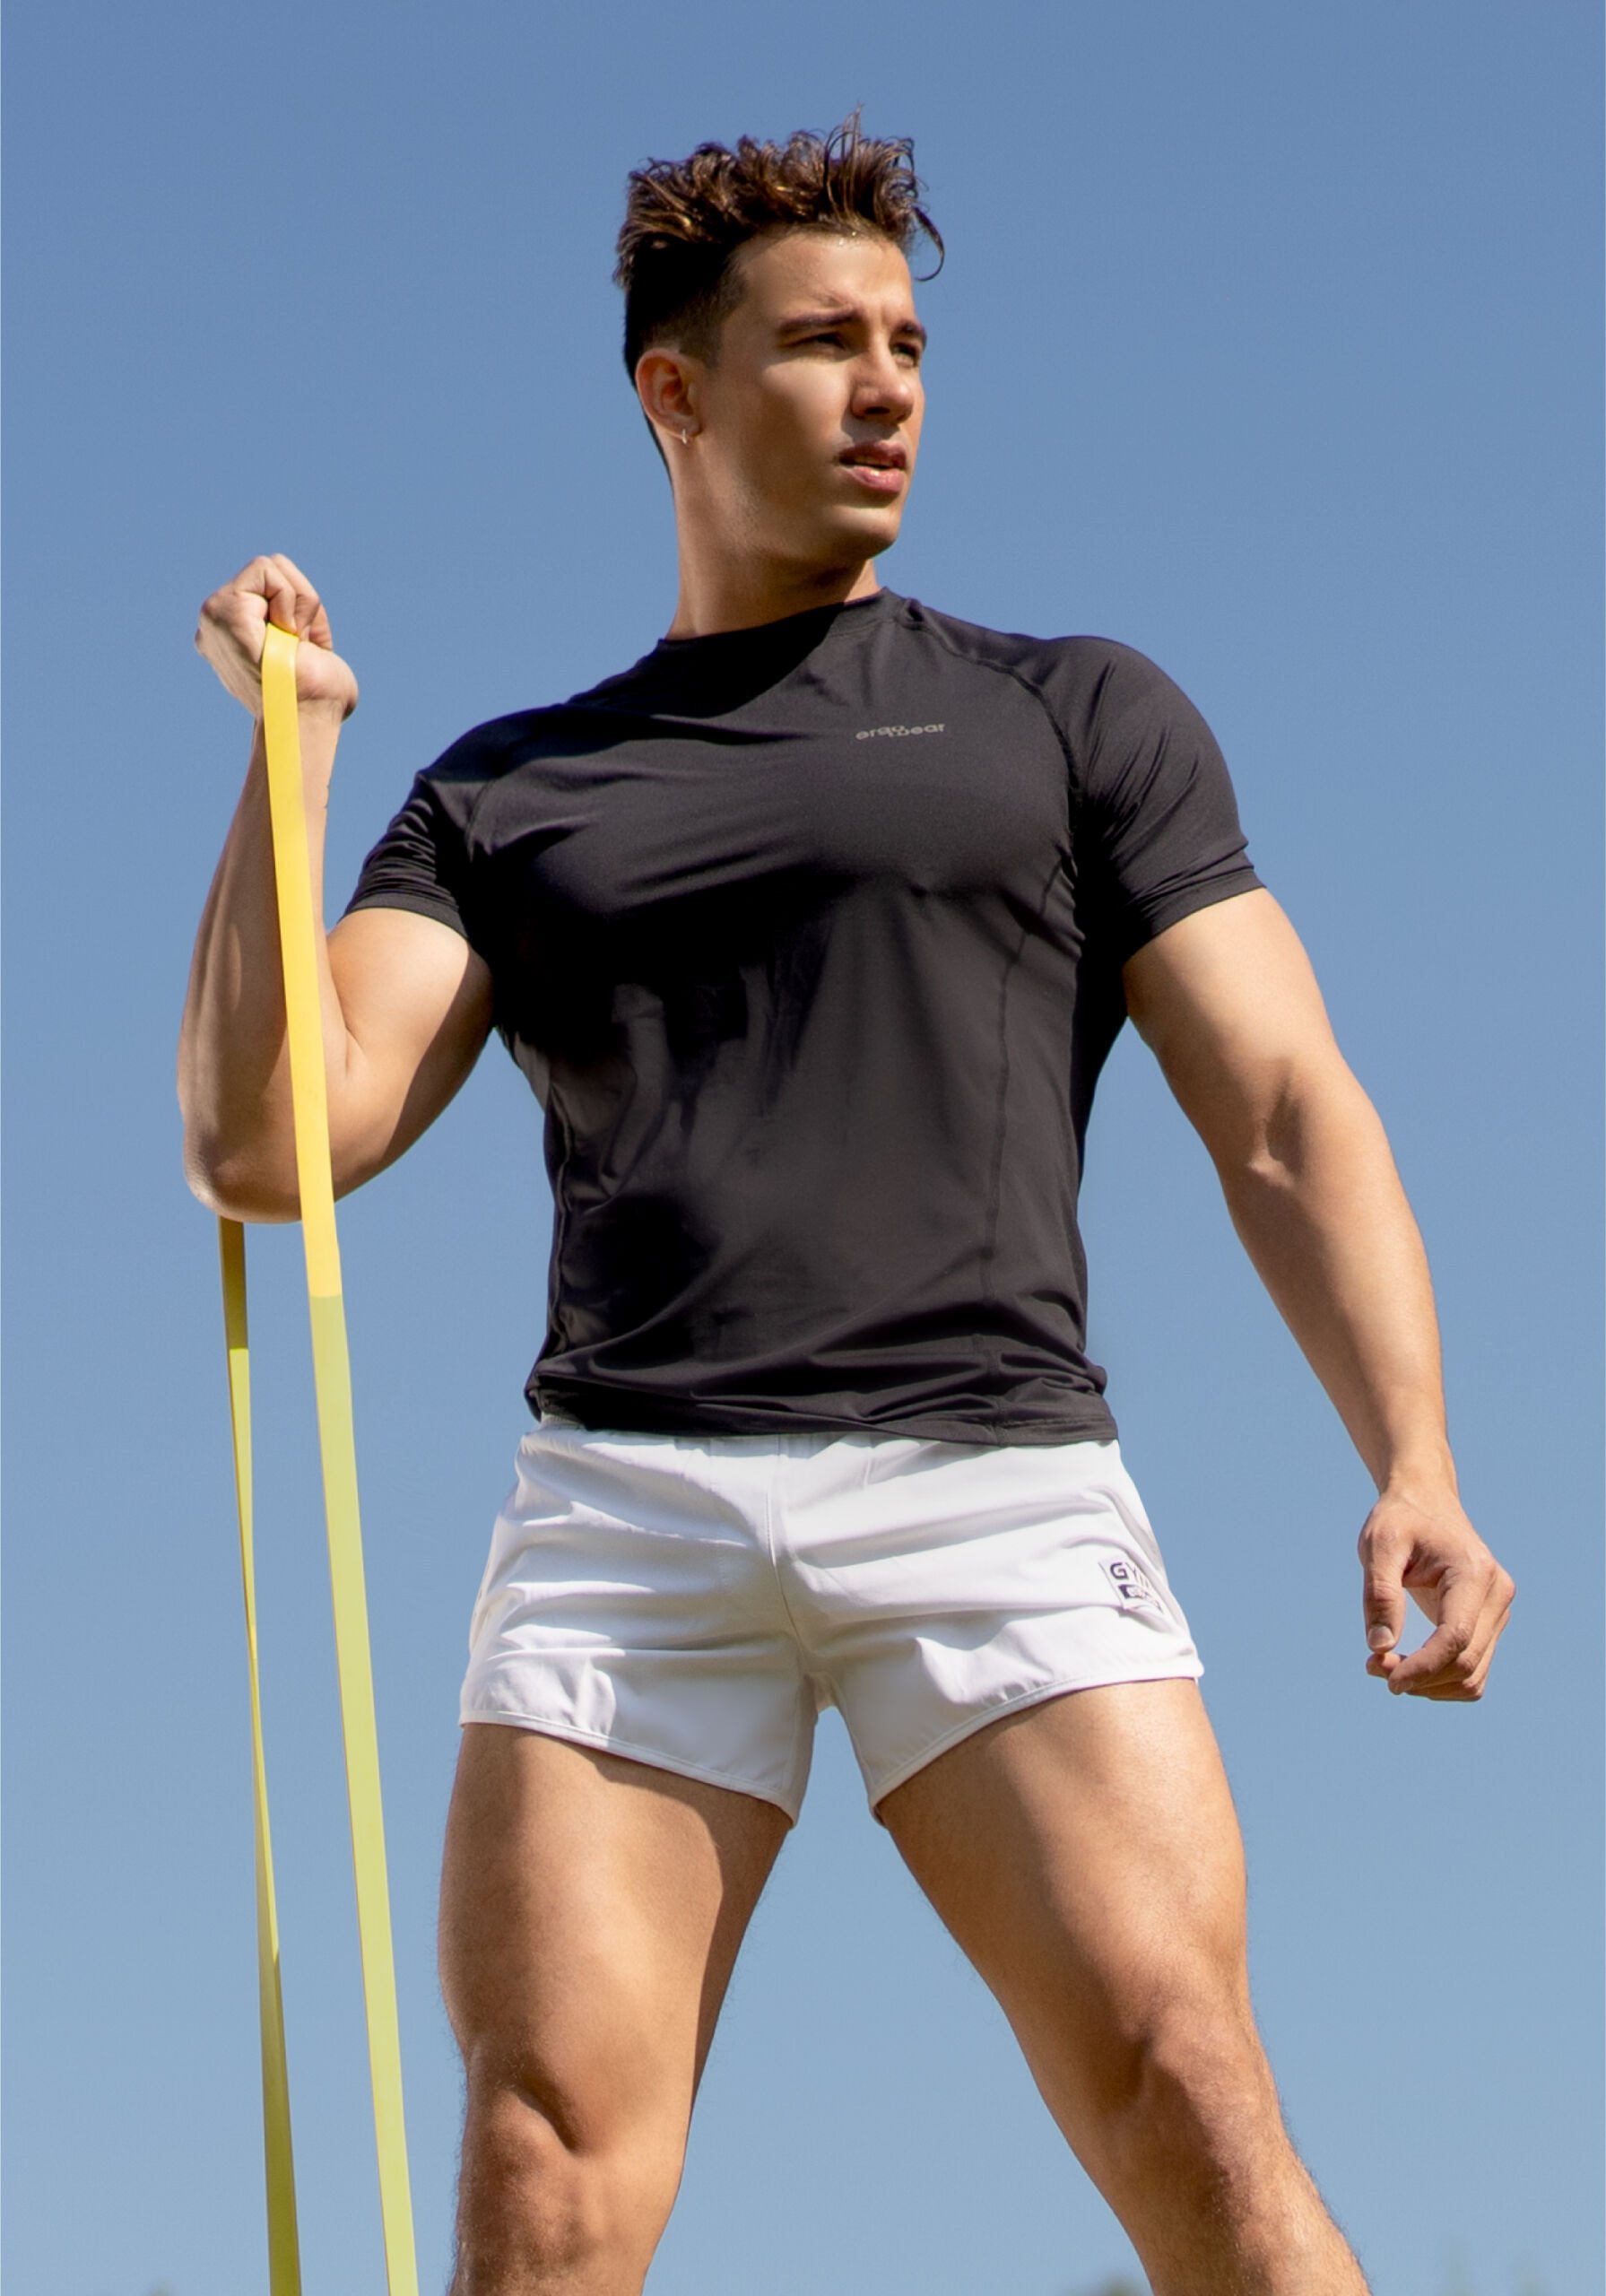 Men's Gym Shorts With Built In Underwear White - Ergowear